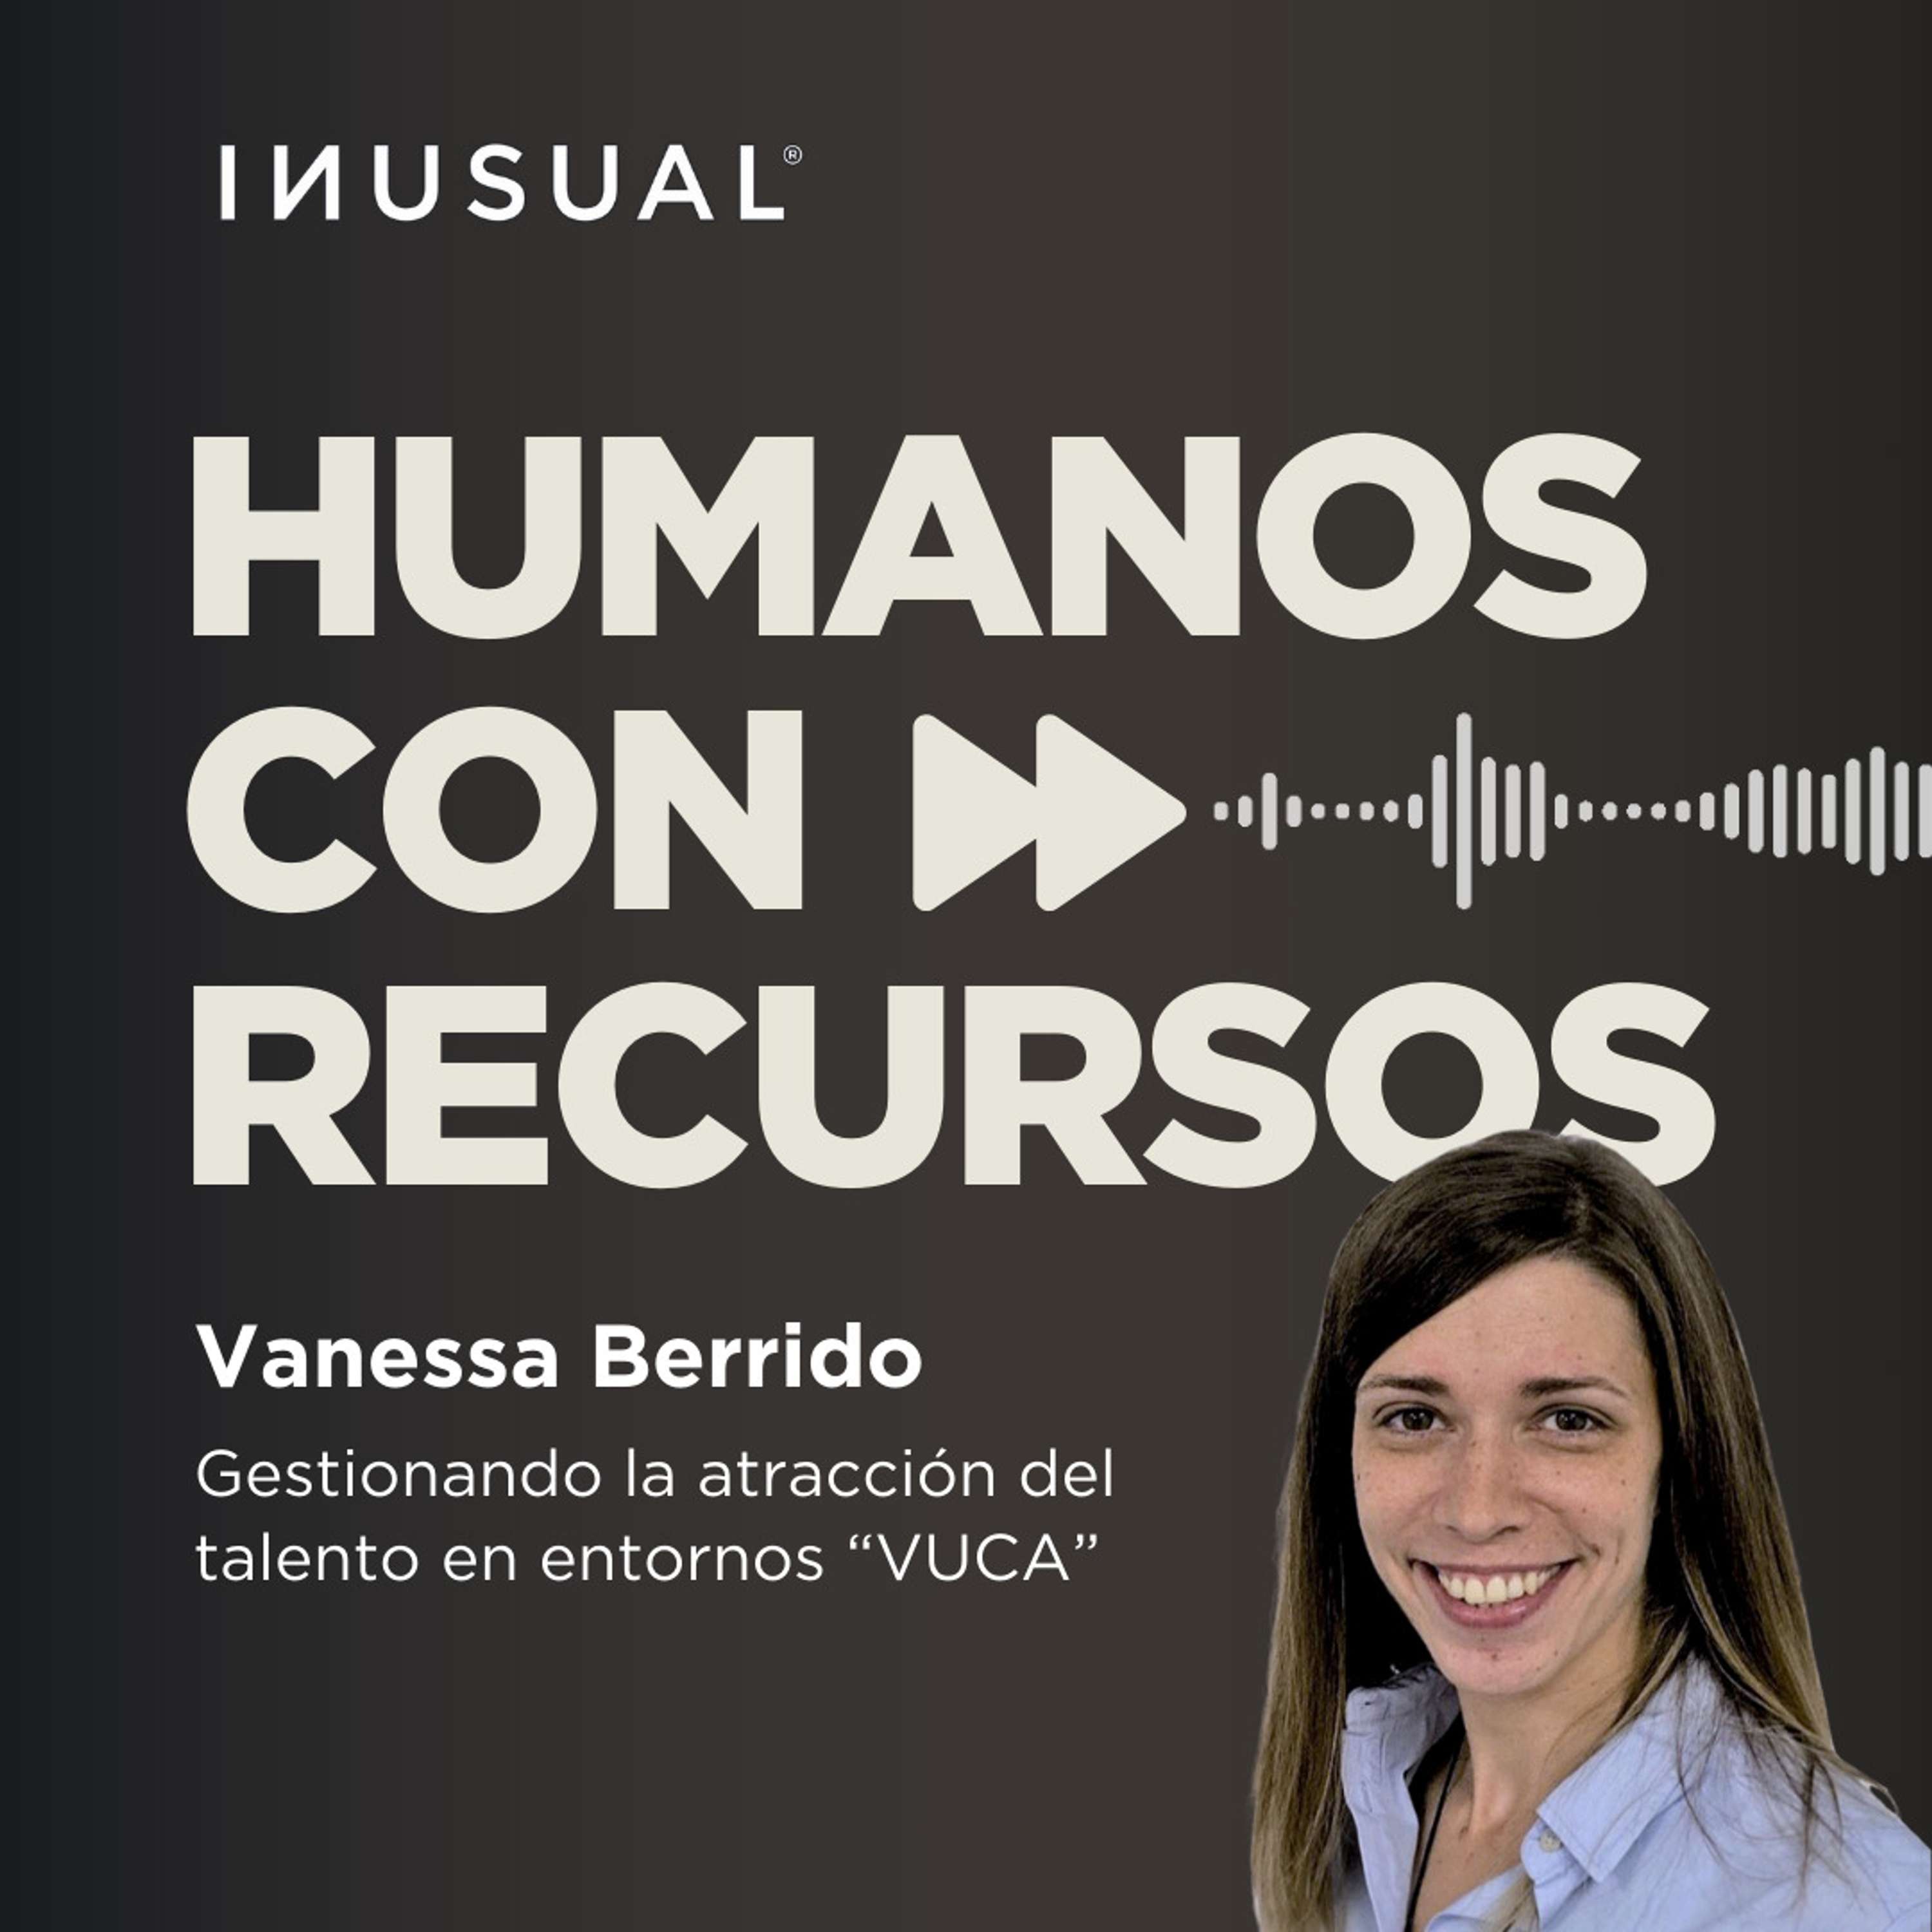 Gestionando la atracción del talento en entornos “VUCA”, con Vanessa Berrido